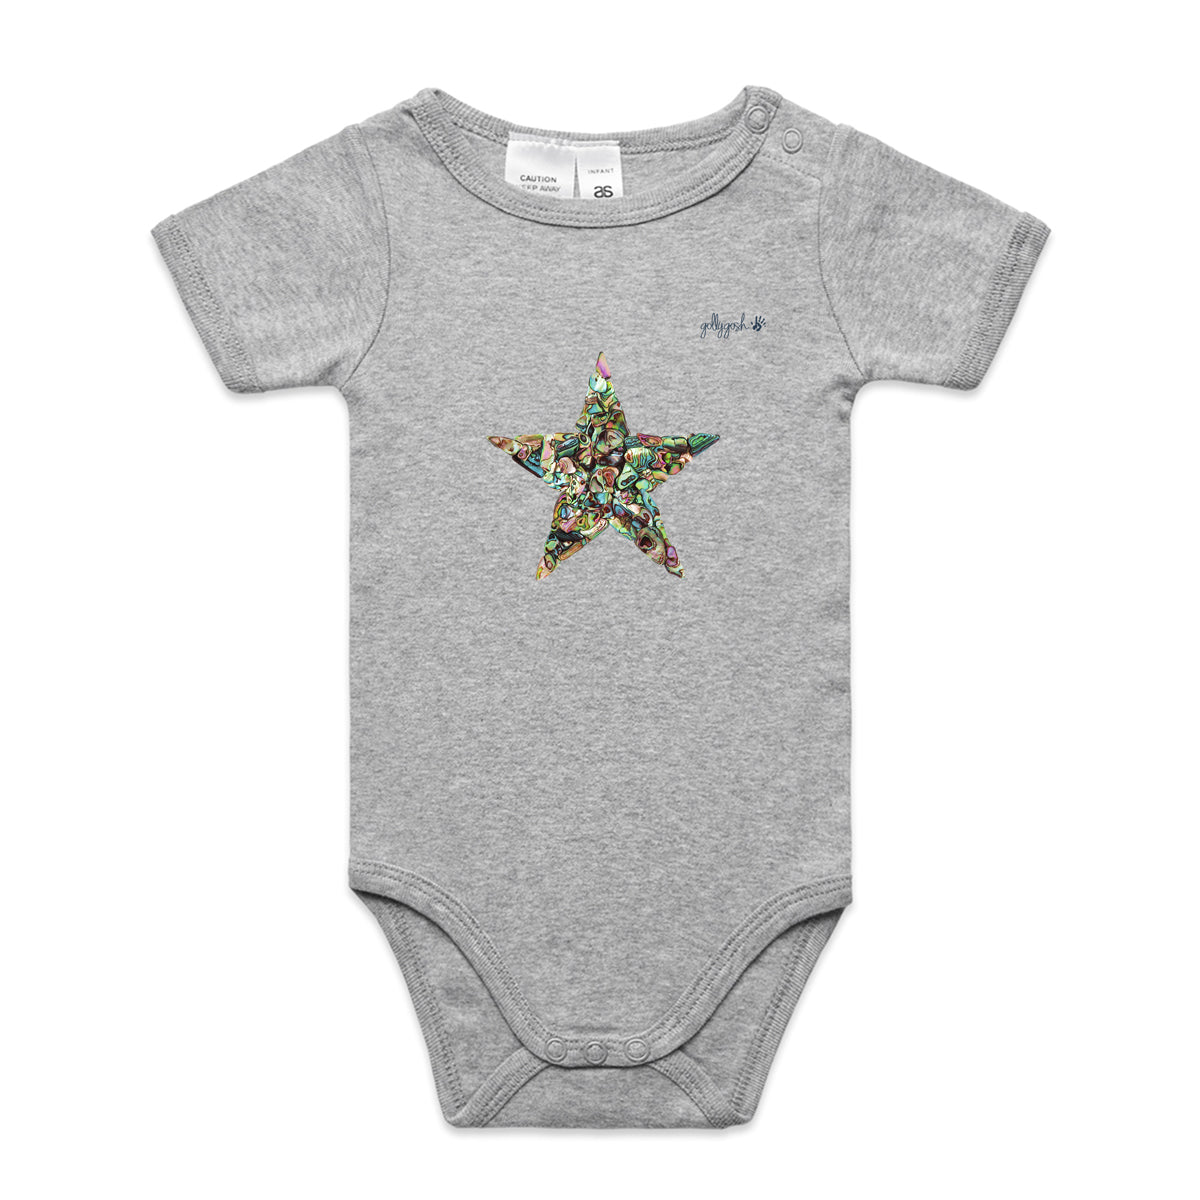 Paua Star - Infant Baby Grow